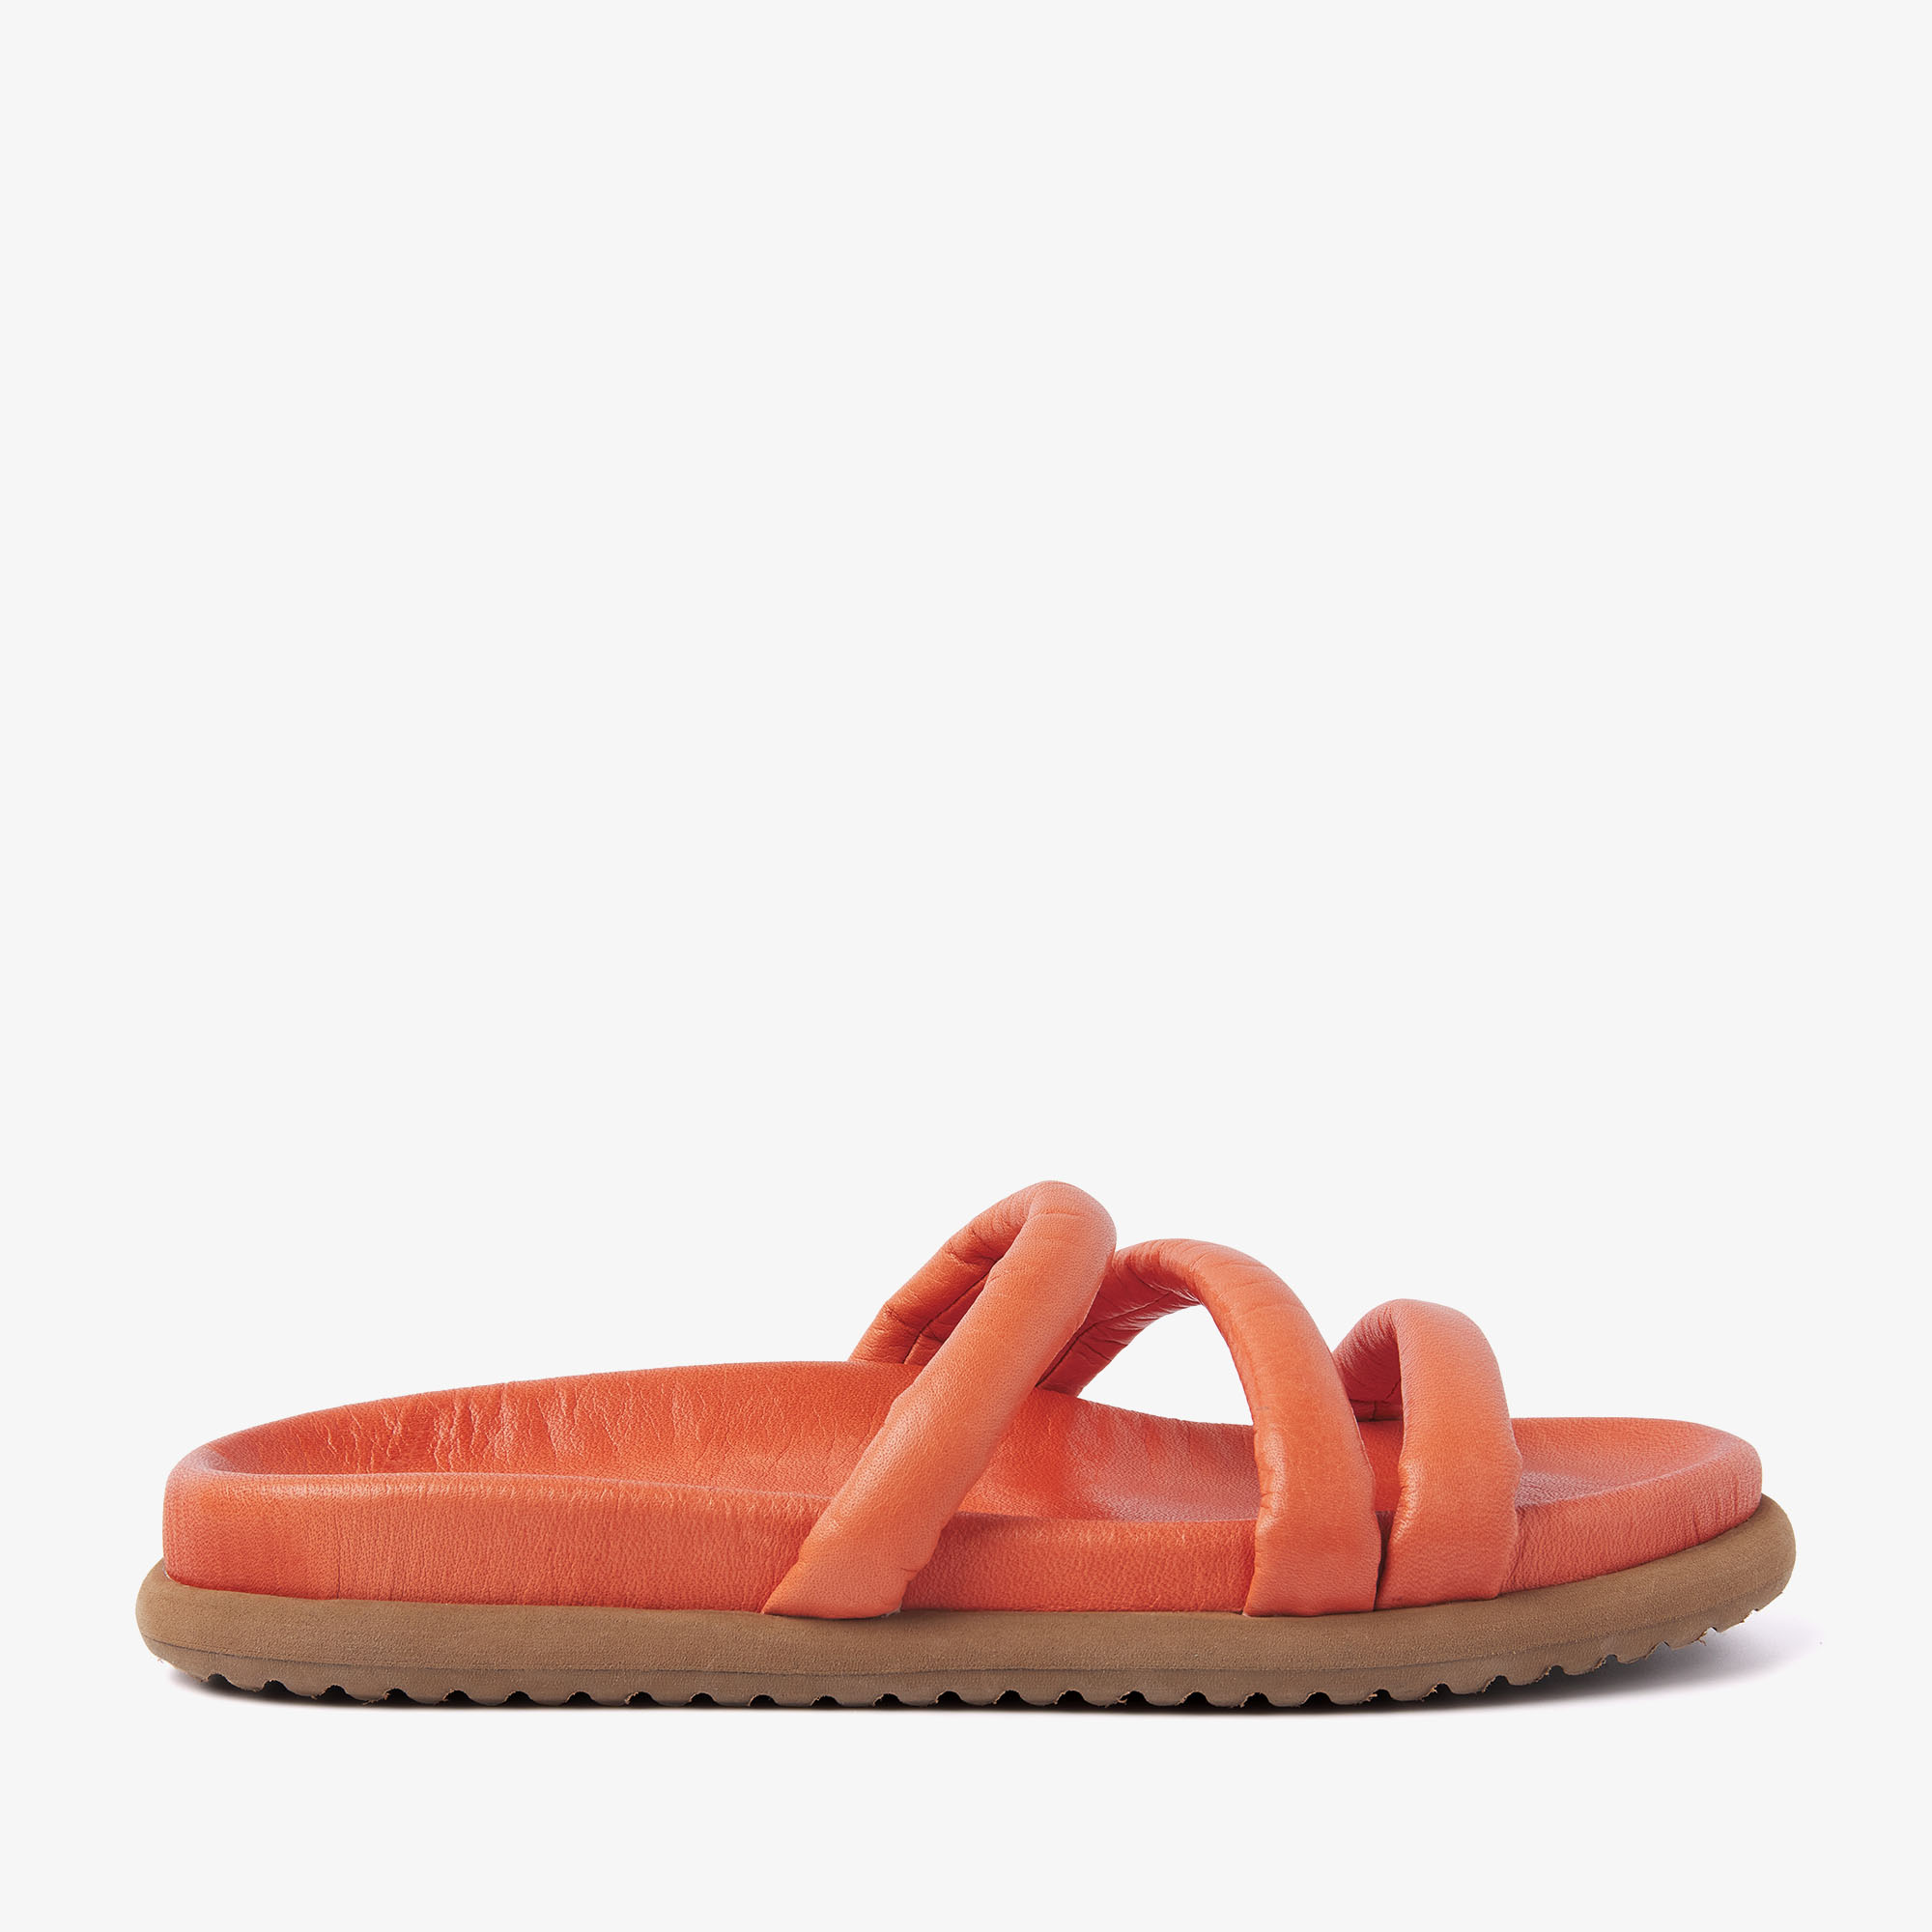 VIA VAI Candy Pop oranje slippers dames - Leer